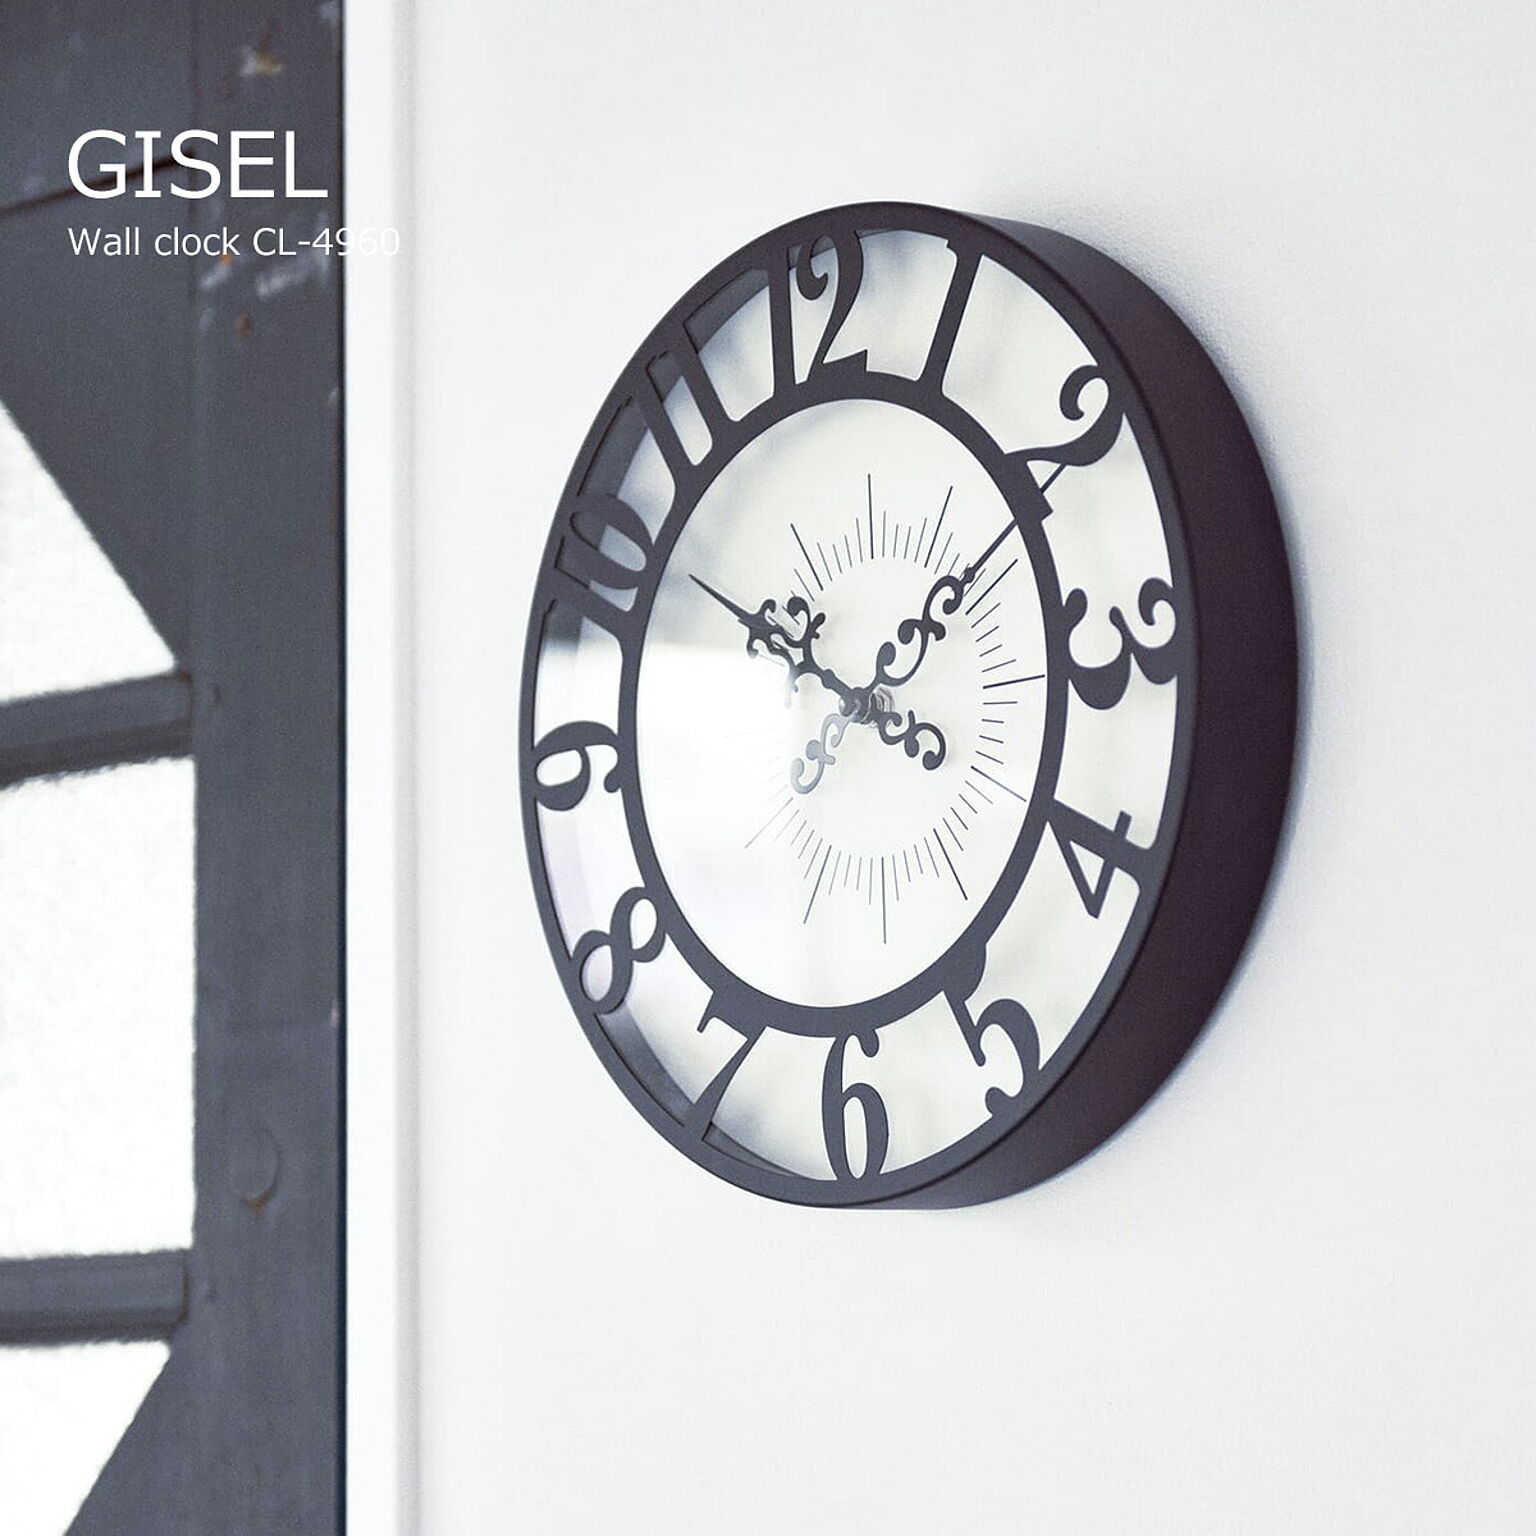 壁掛け時計 おしゃれ 時計 壁掛け 北欧 掛け時計 ジゼル Gisel CL-4960 モダン ゴシック モノトーン ガーリー レトロ クラシカル フェミニン ウォールクロック リビング ダイニング 